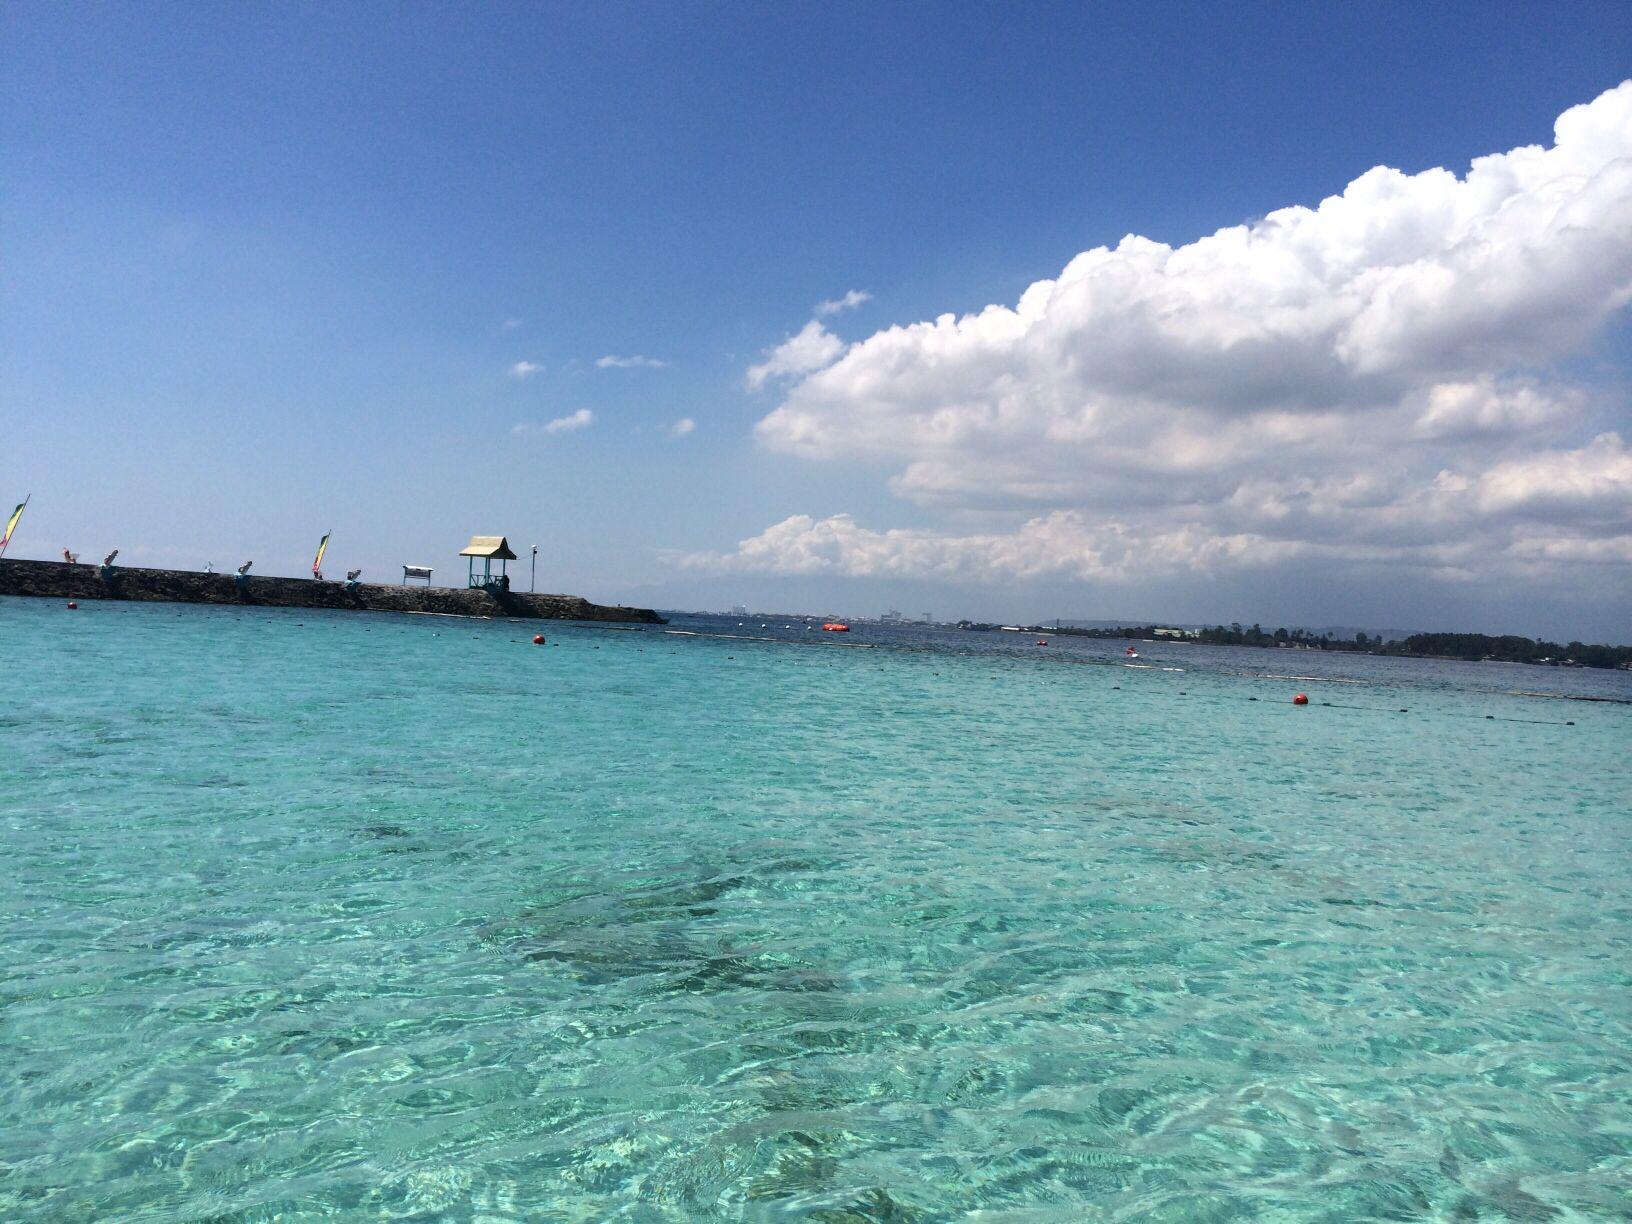 巴厘岛,沙巴,长滩岛,普吉岛,哪个更值得一去?希